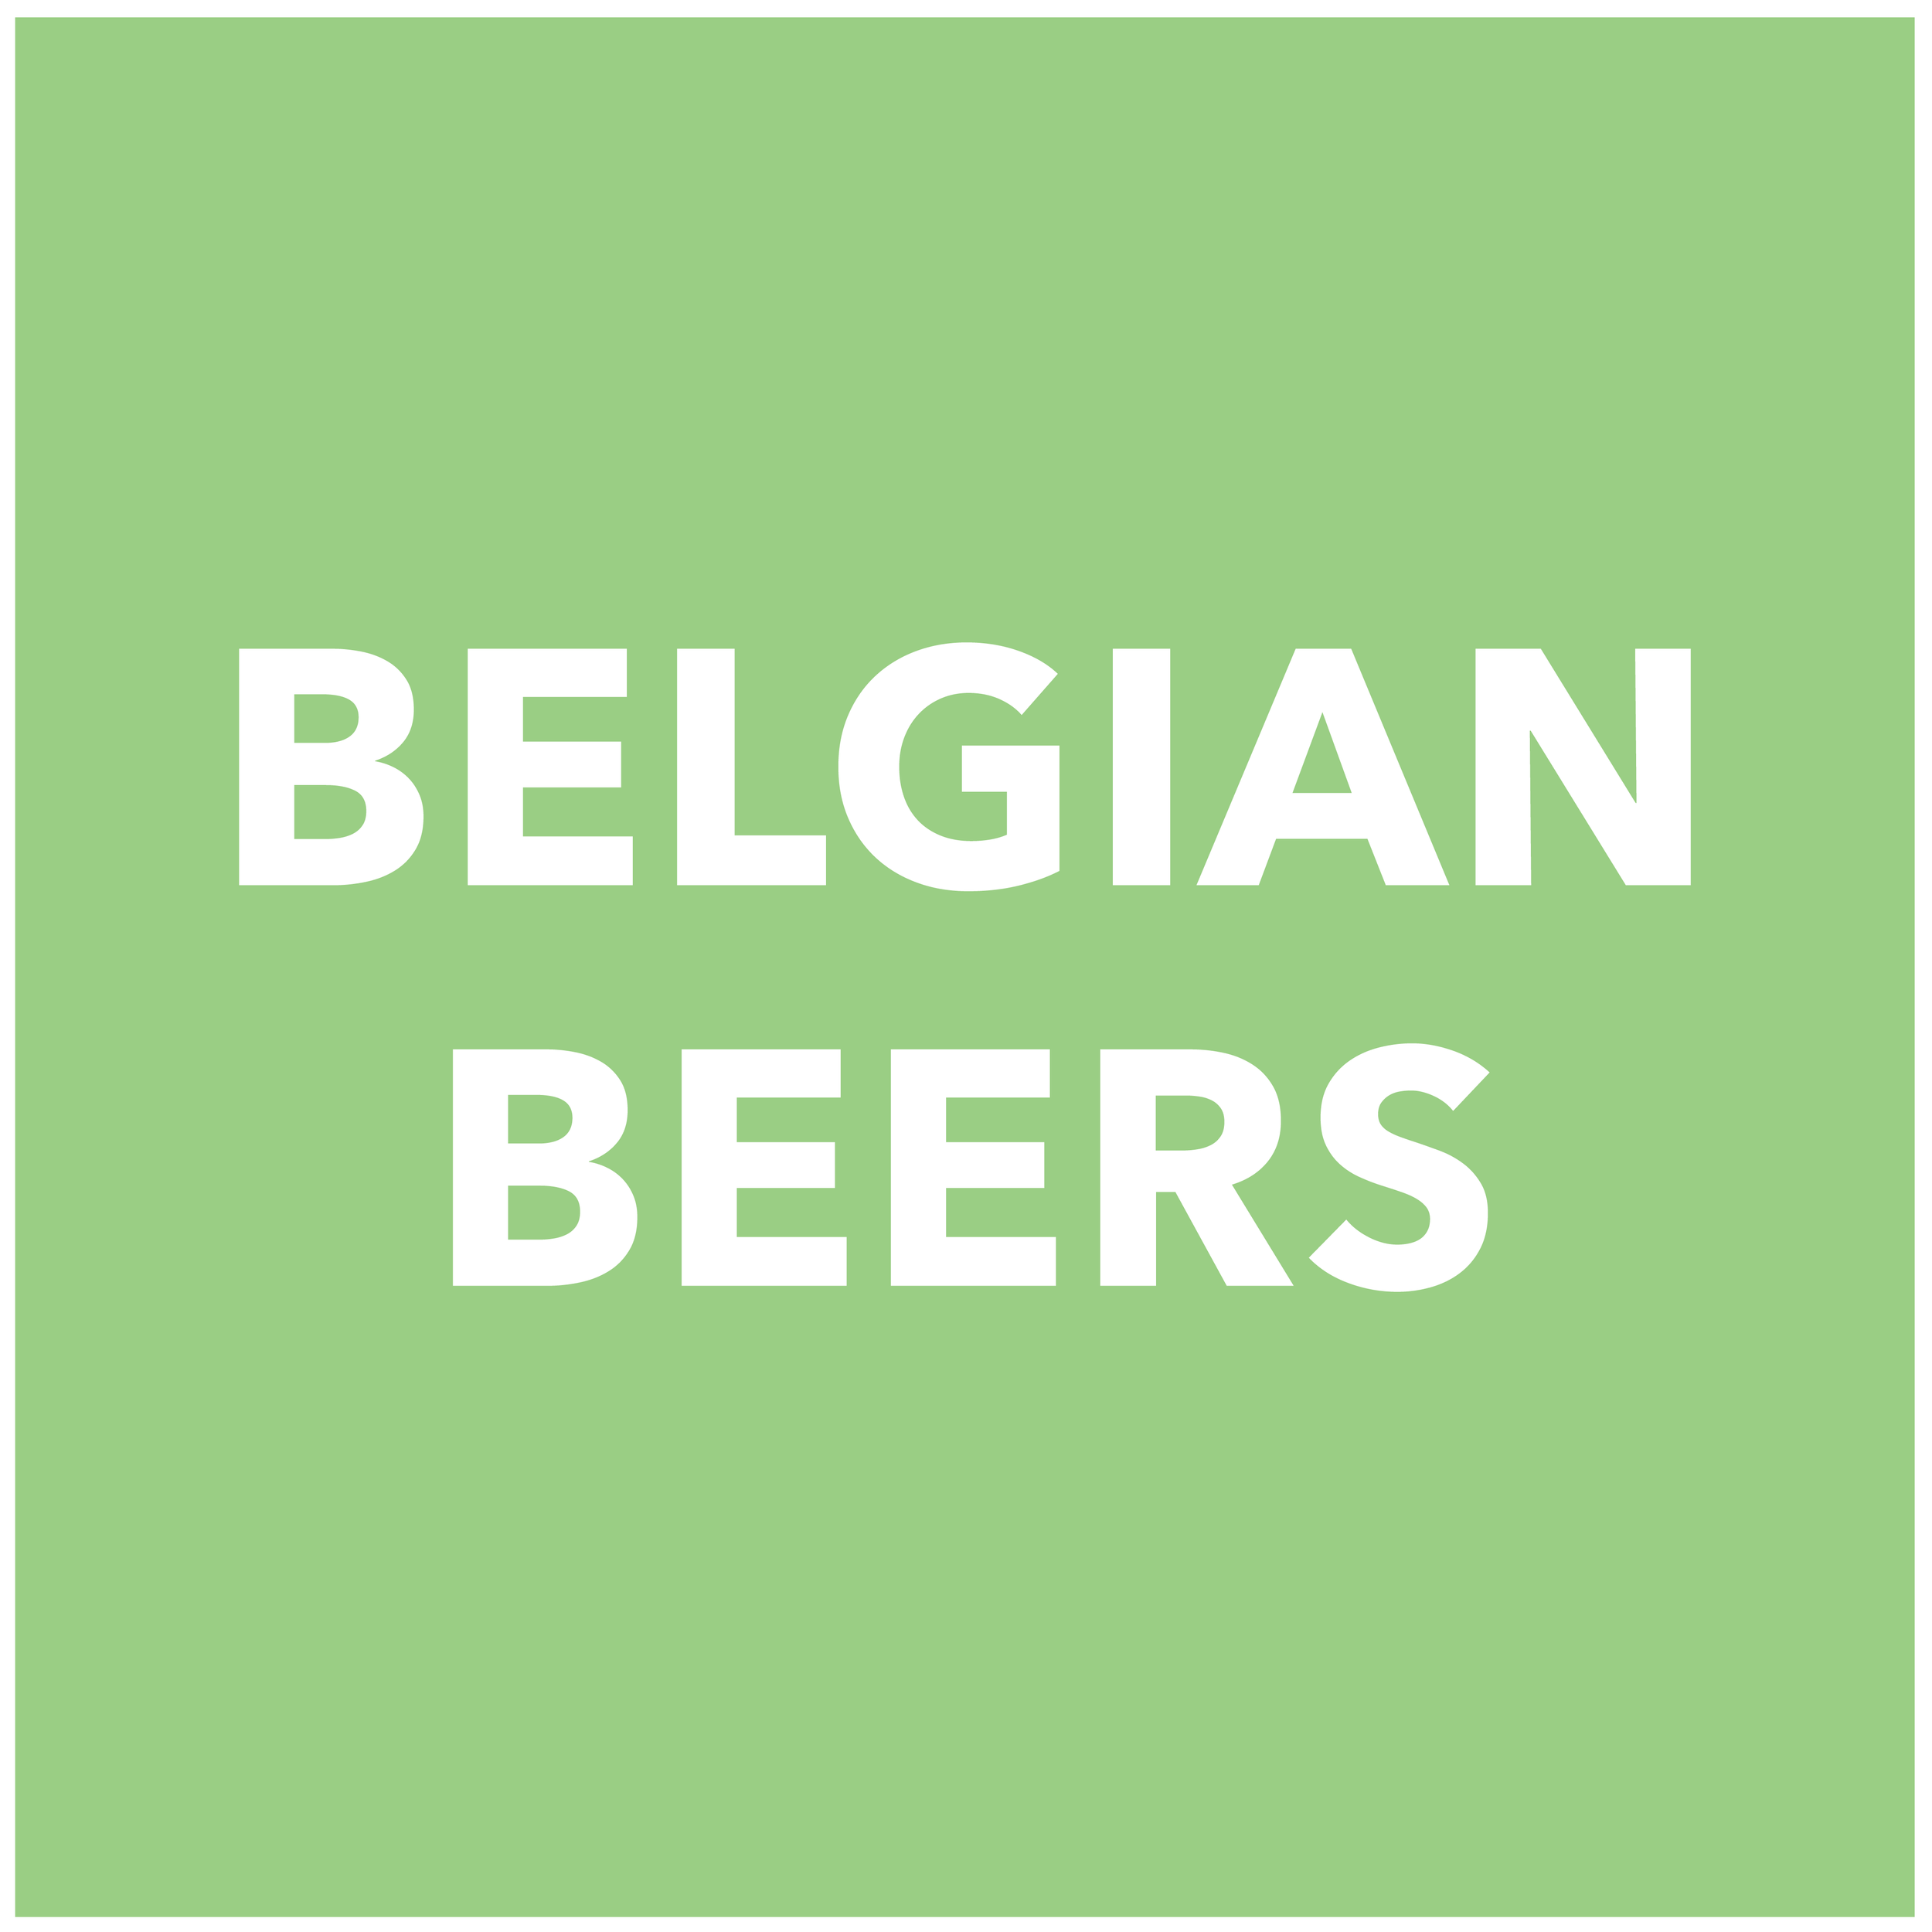 Belgian-01.png